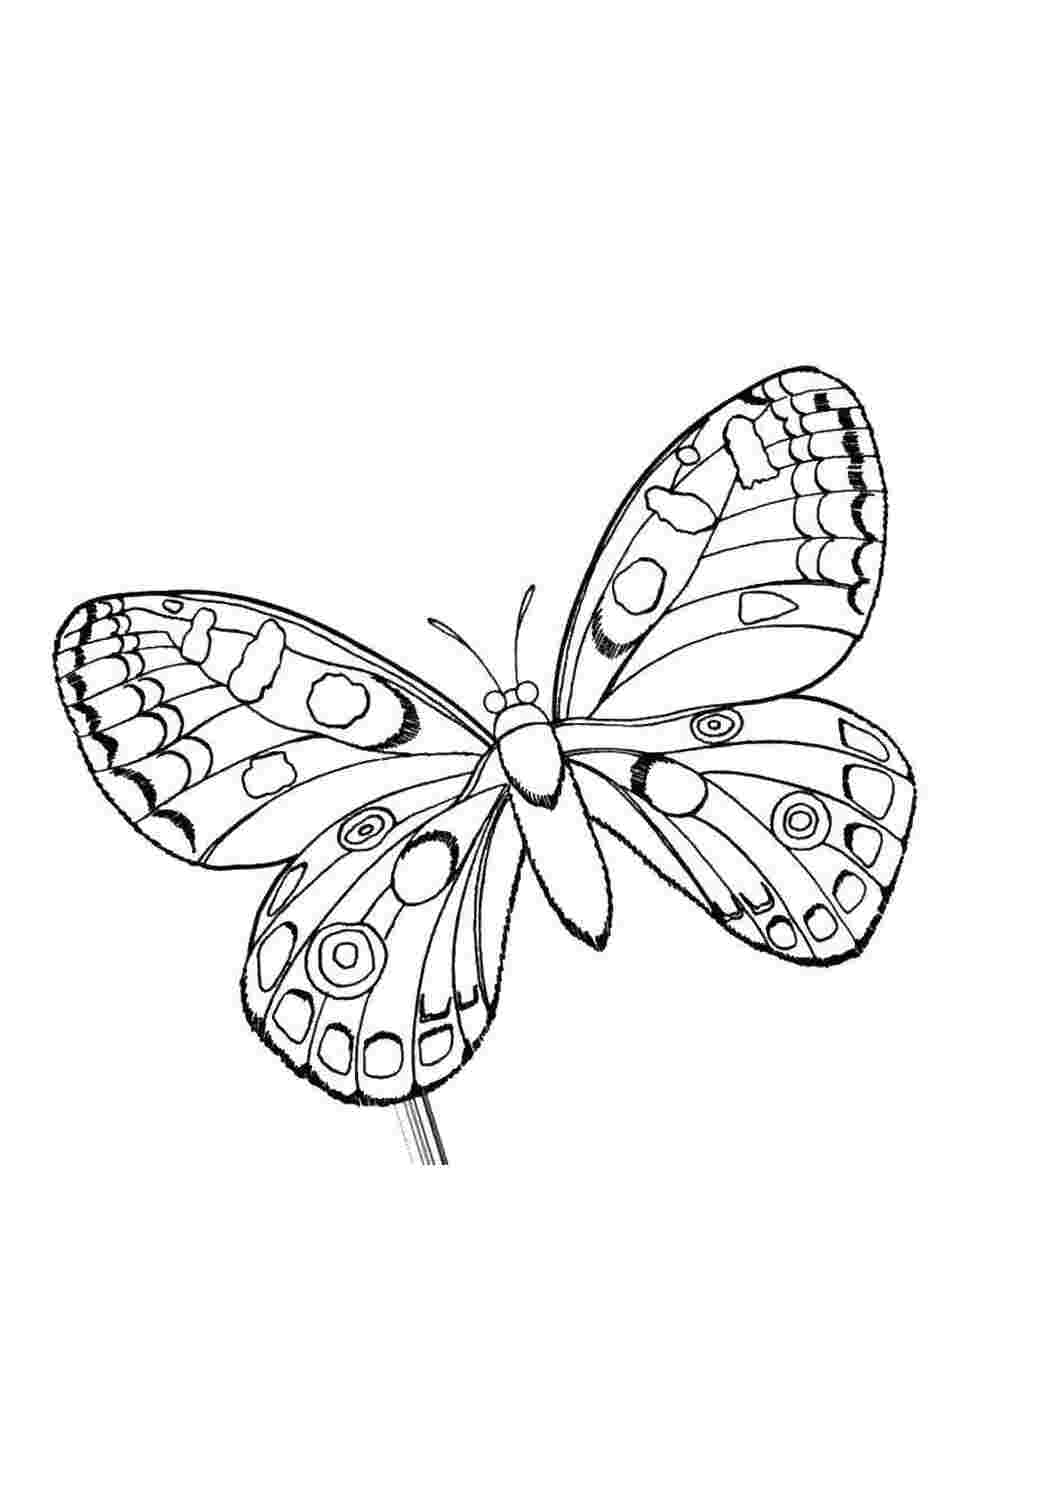 Распечатать картинки. Раскраски бабочки красивые. Раскраски для девочек бабочки. Раскраска для девочек красивые бабочки. Картинки бабочки красивые раскраски.